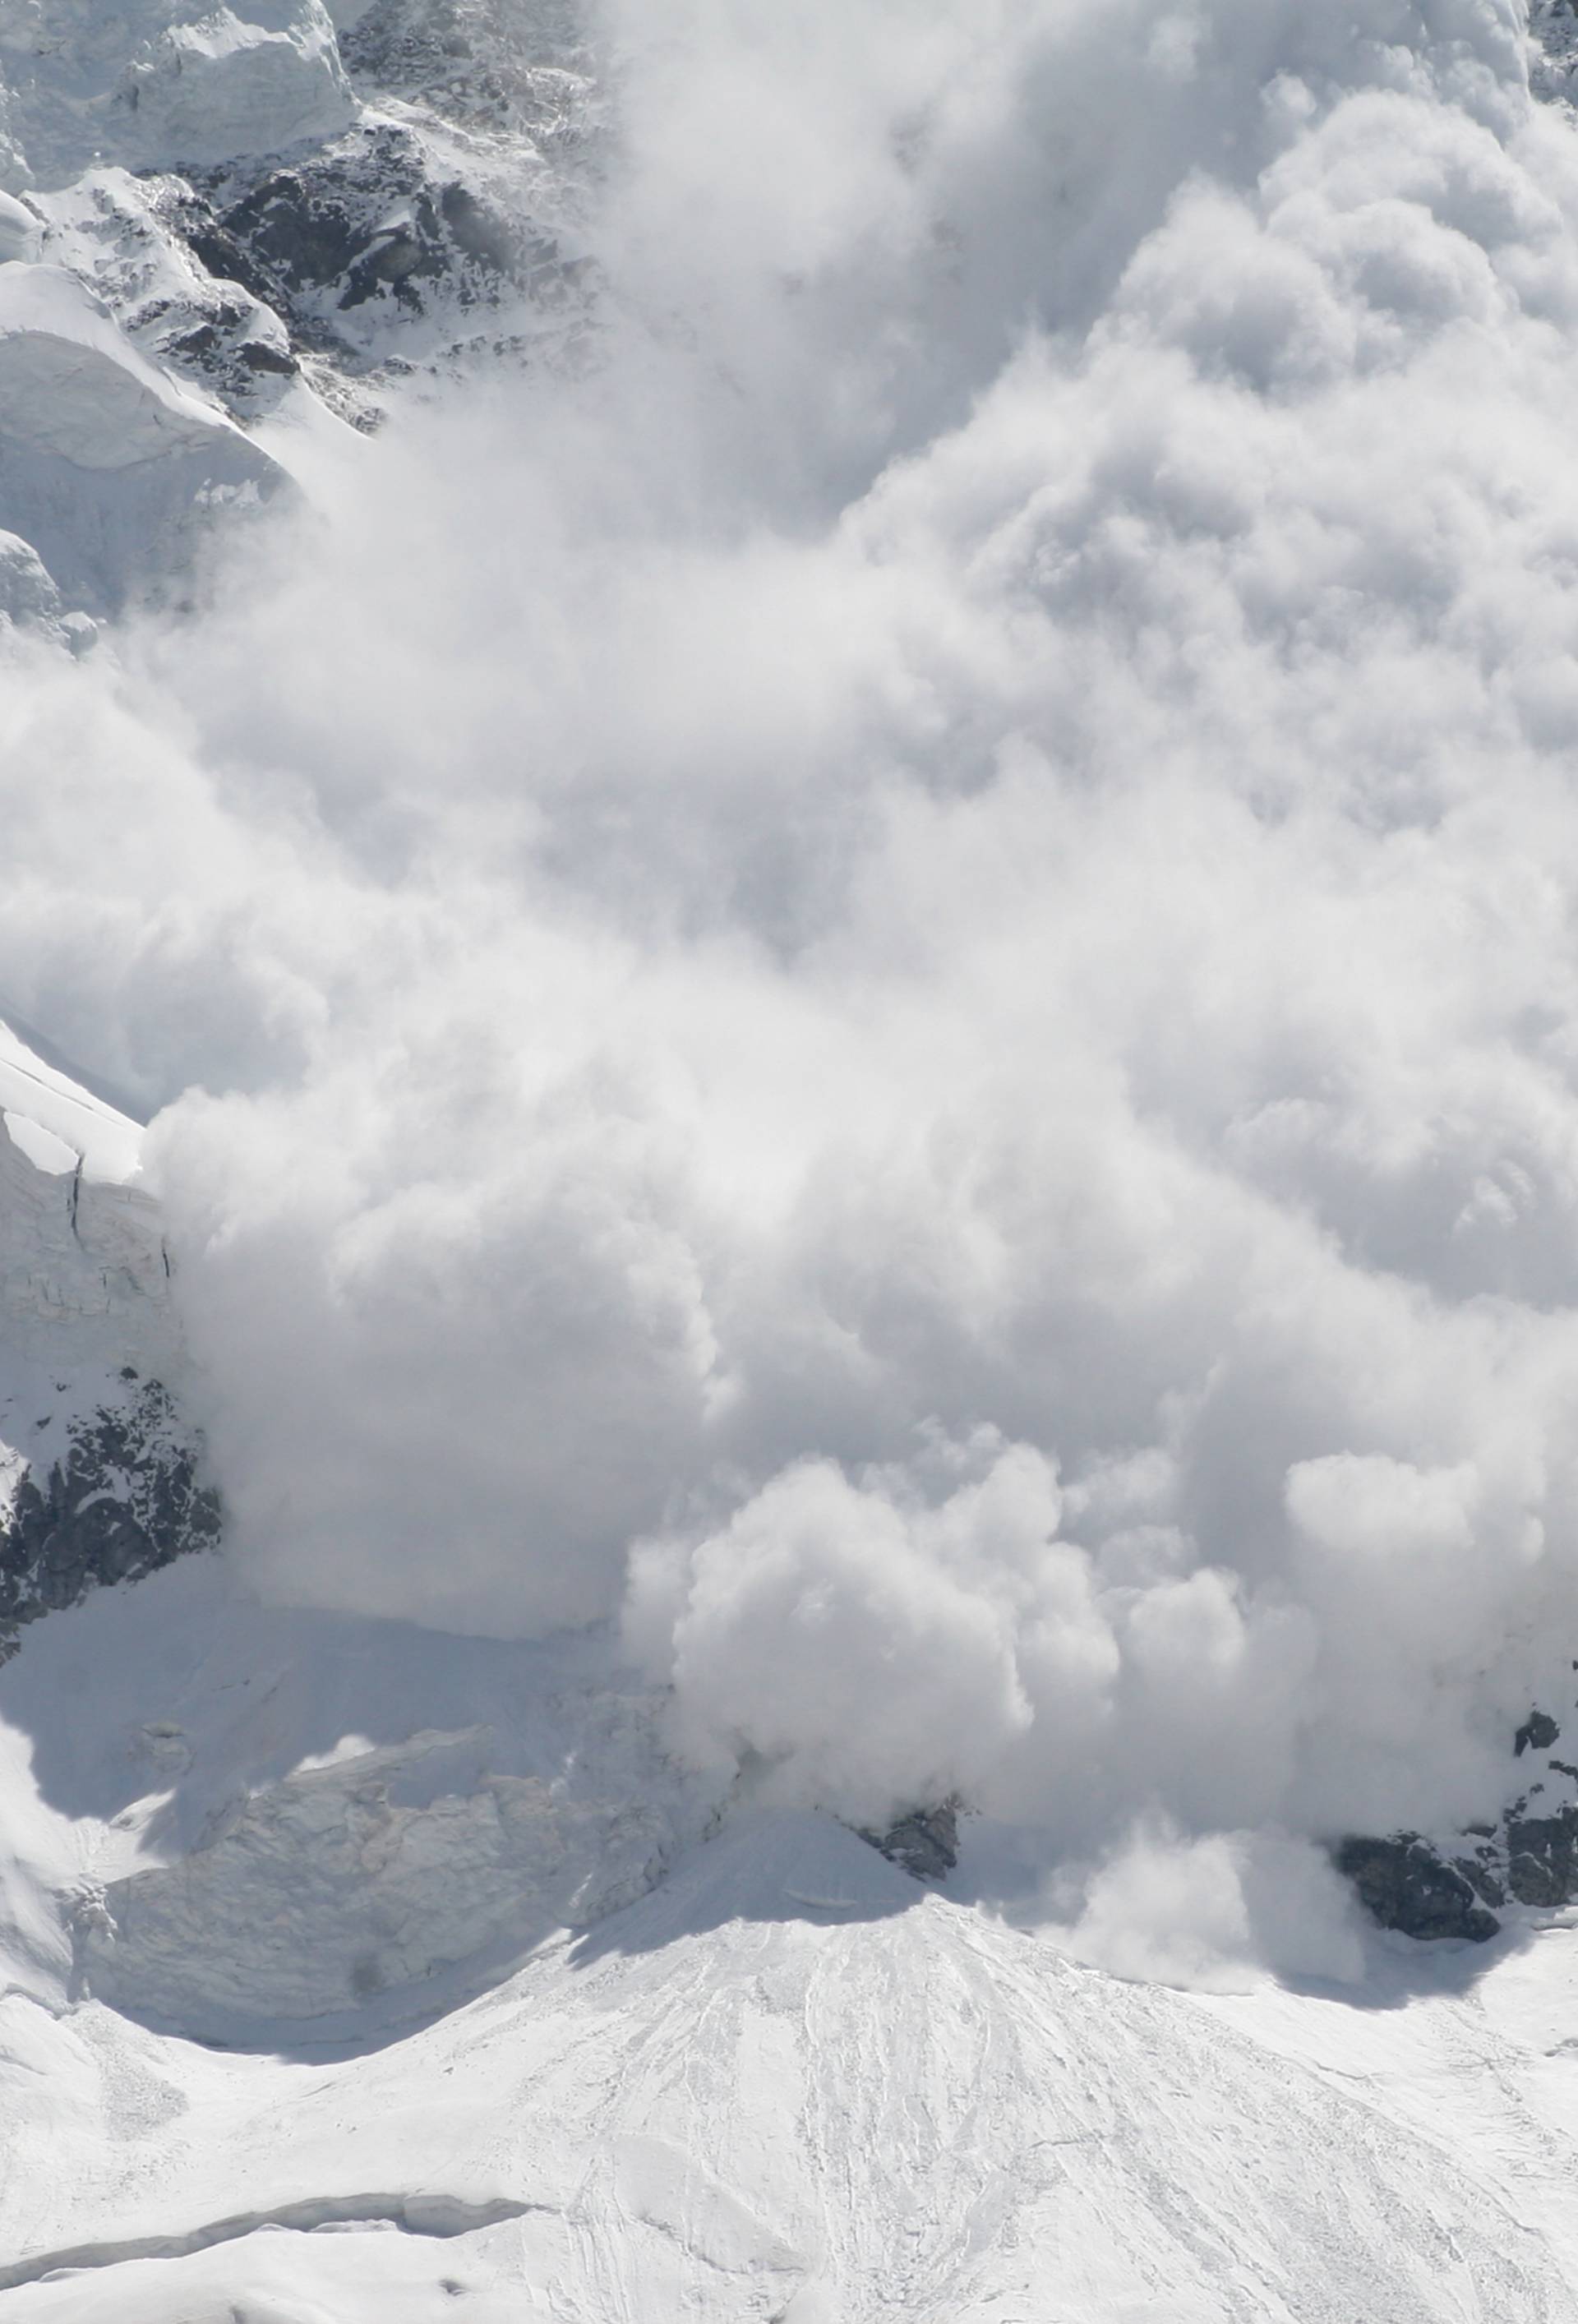 HGSS upozorio na lavine: Ova pravila slijedite na skijalištima